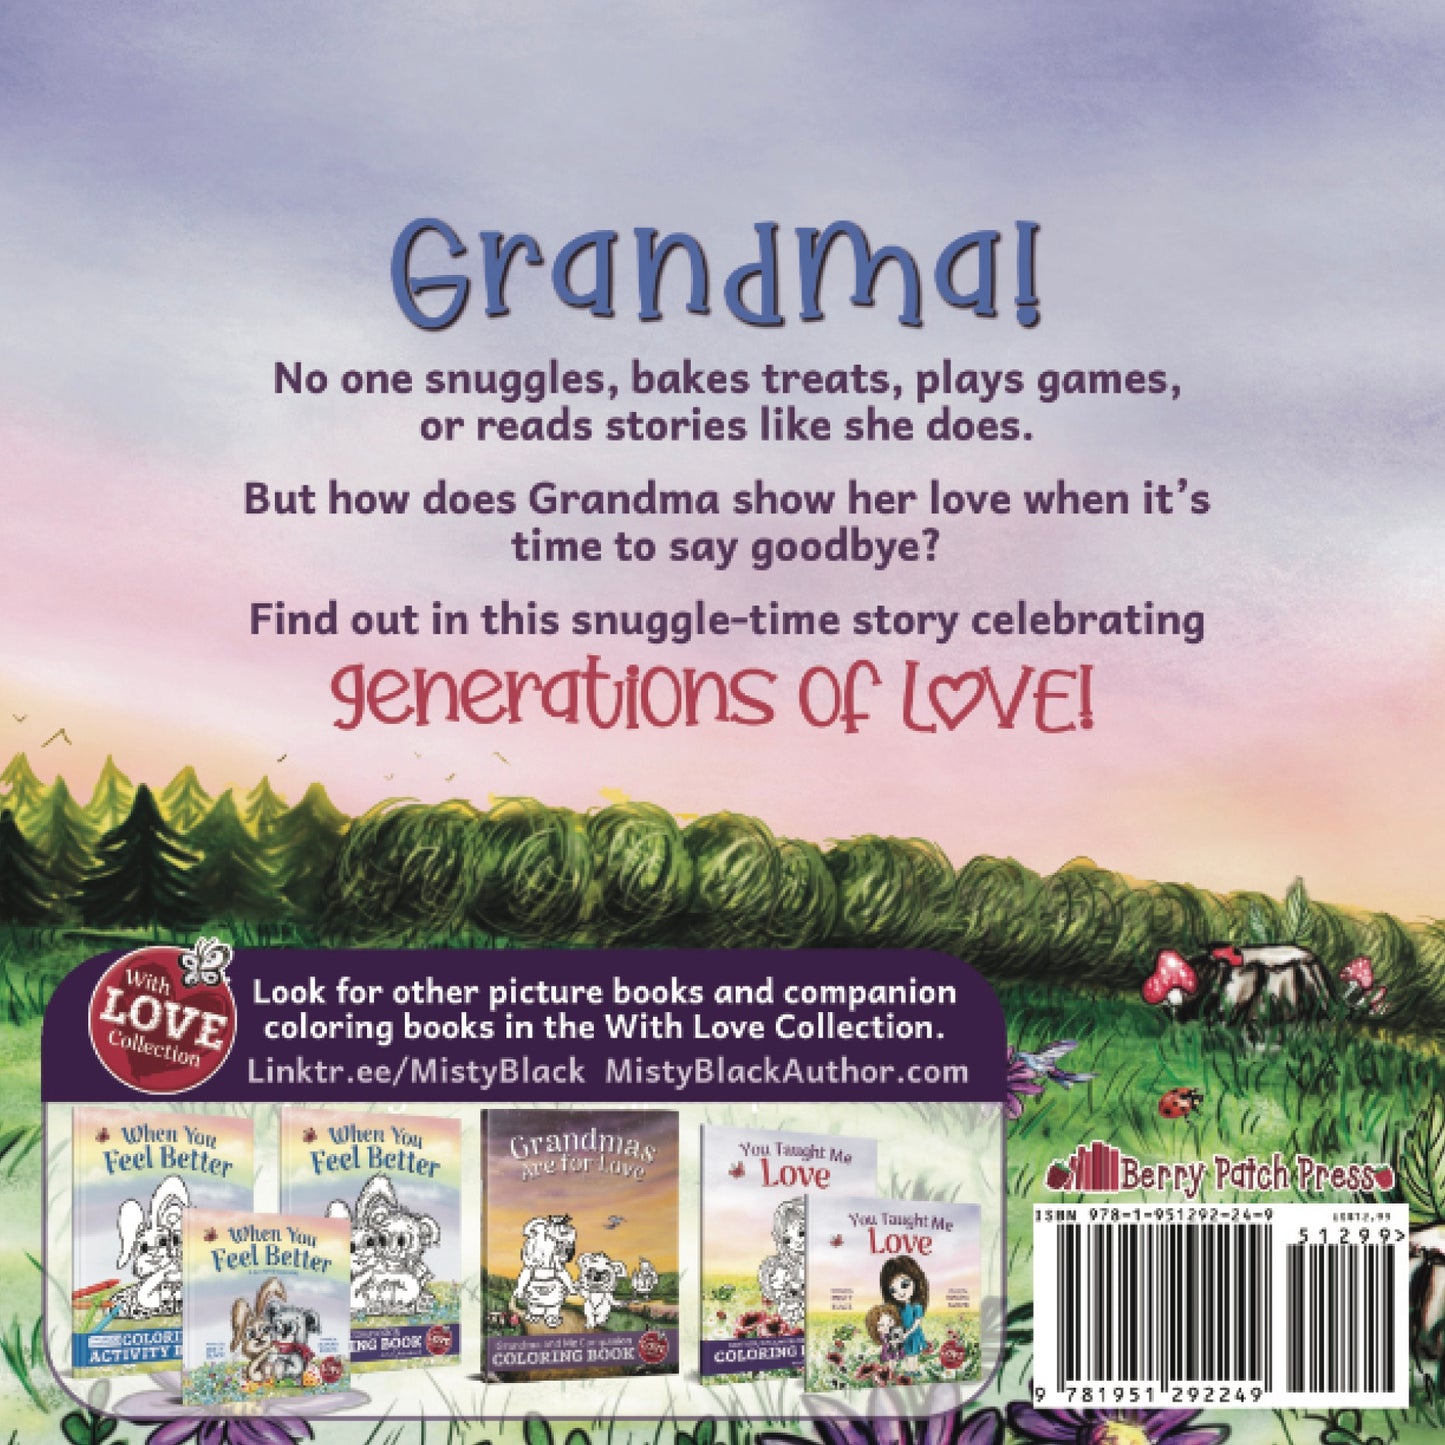 Grandmas Are for Love - Make Momentos